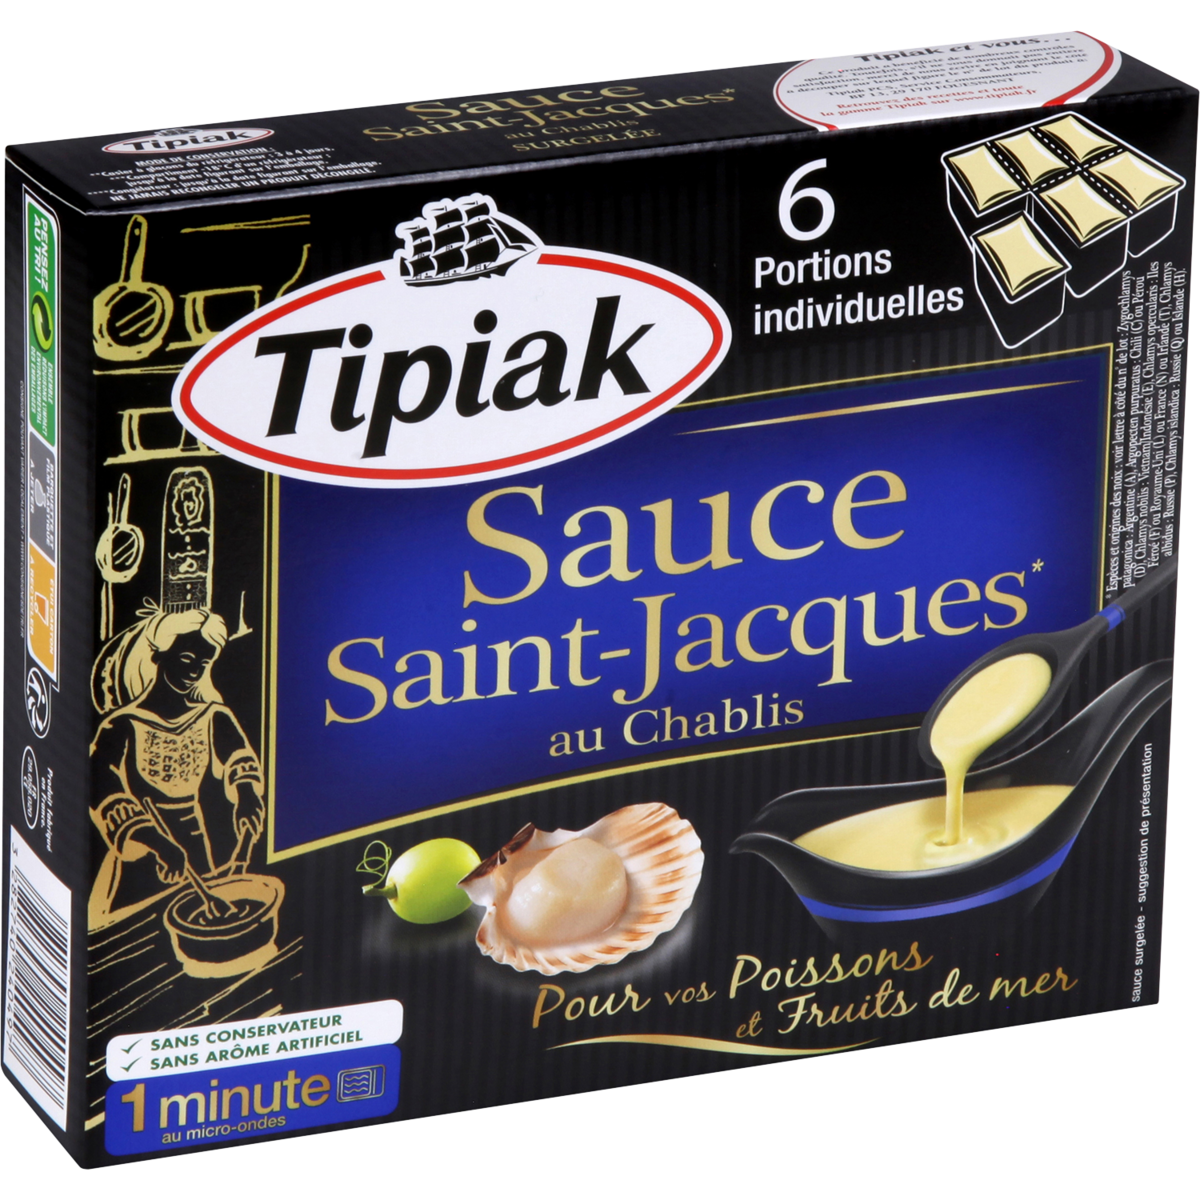 TIPIAK Sauce Saint-Jacques 6 portions 6x50g